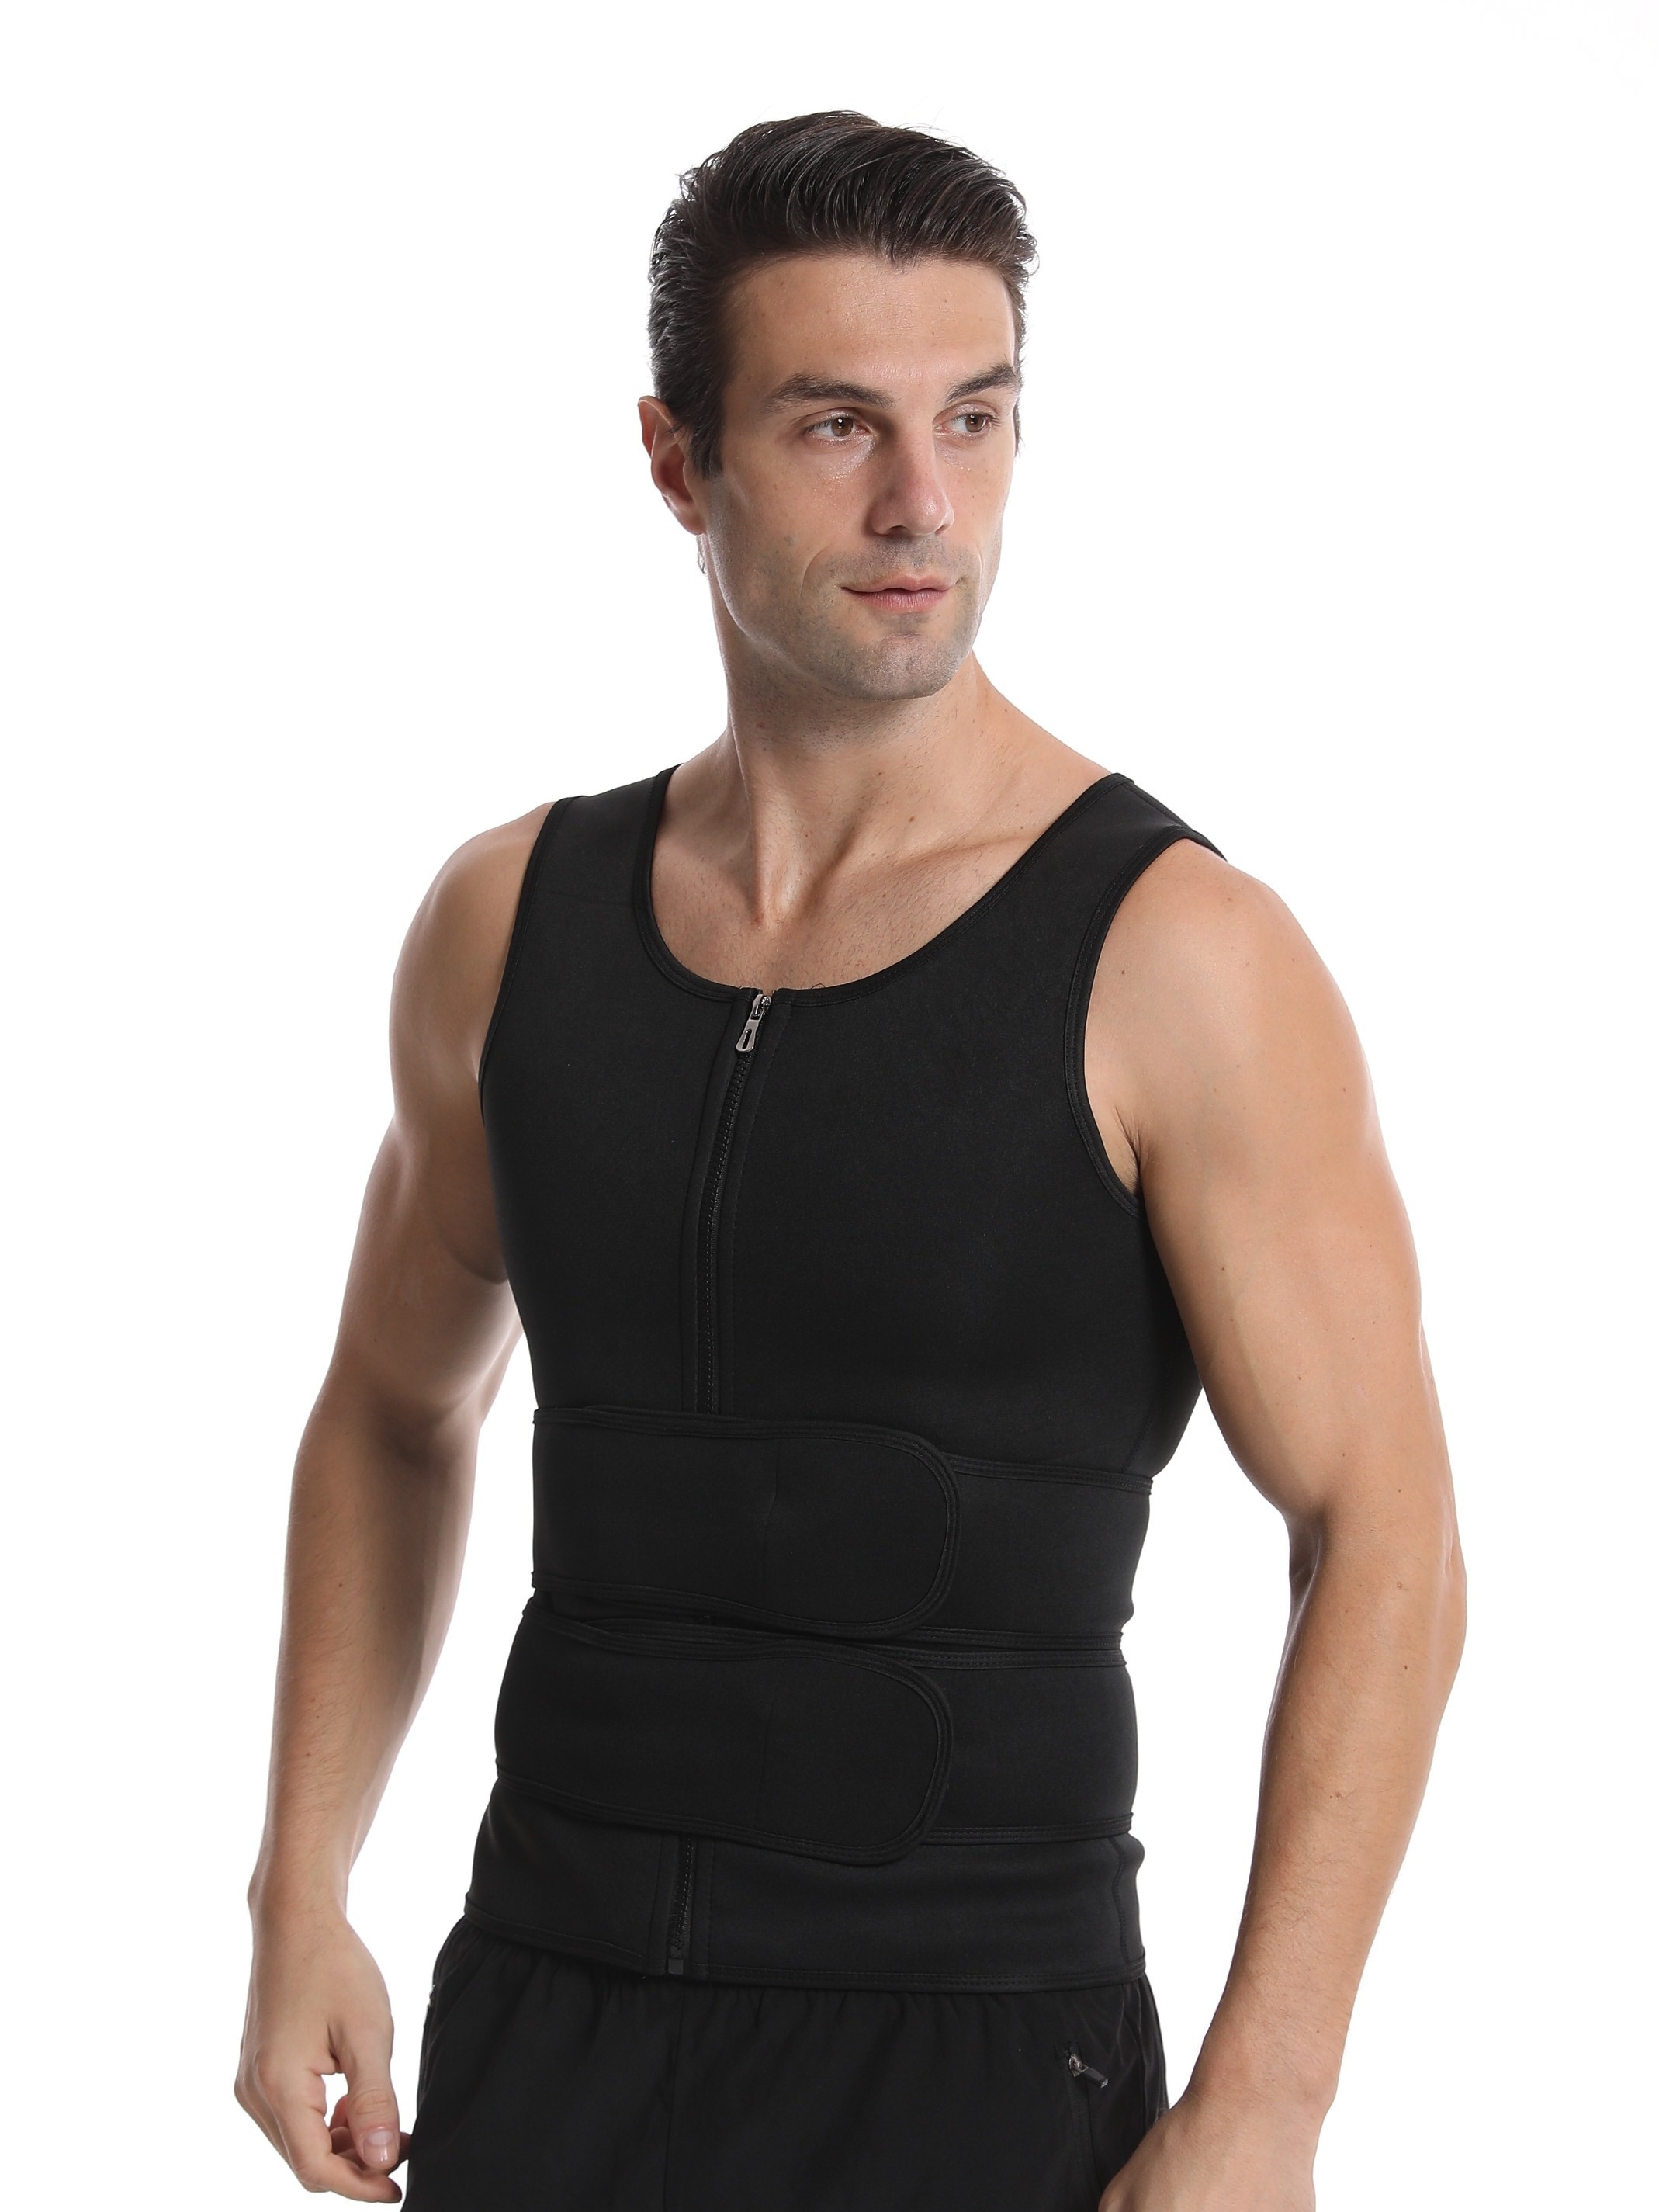 Men's Sauna Sweat Vest Body Shaper Waist Trainer Slimming Zip Tank Top  Workout